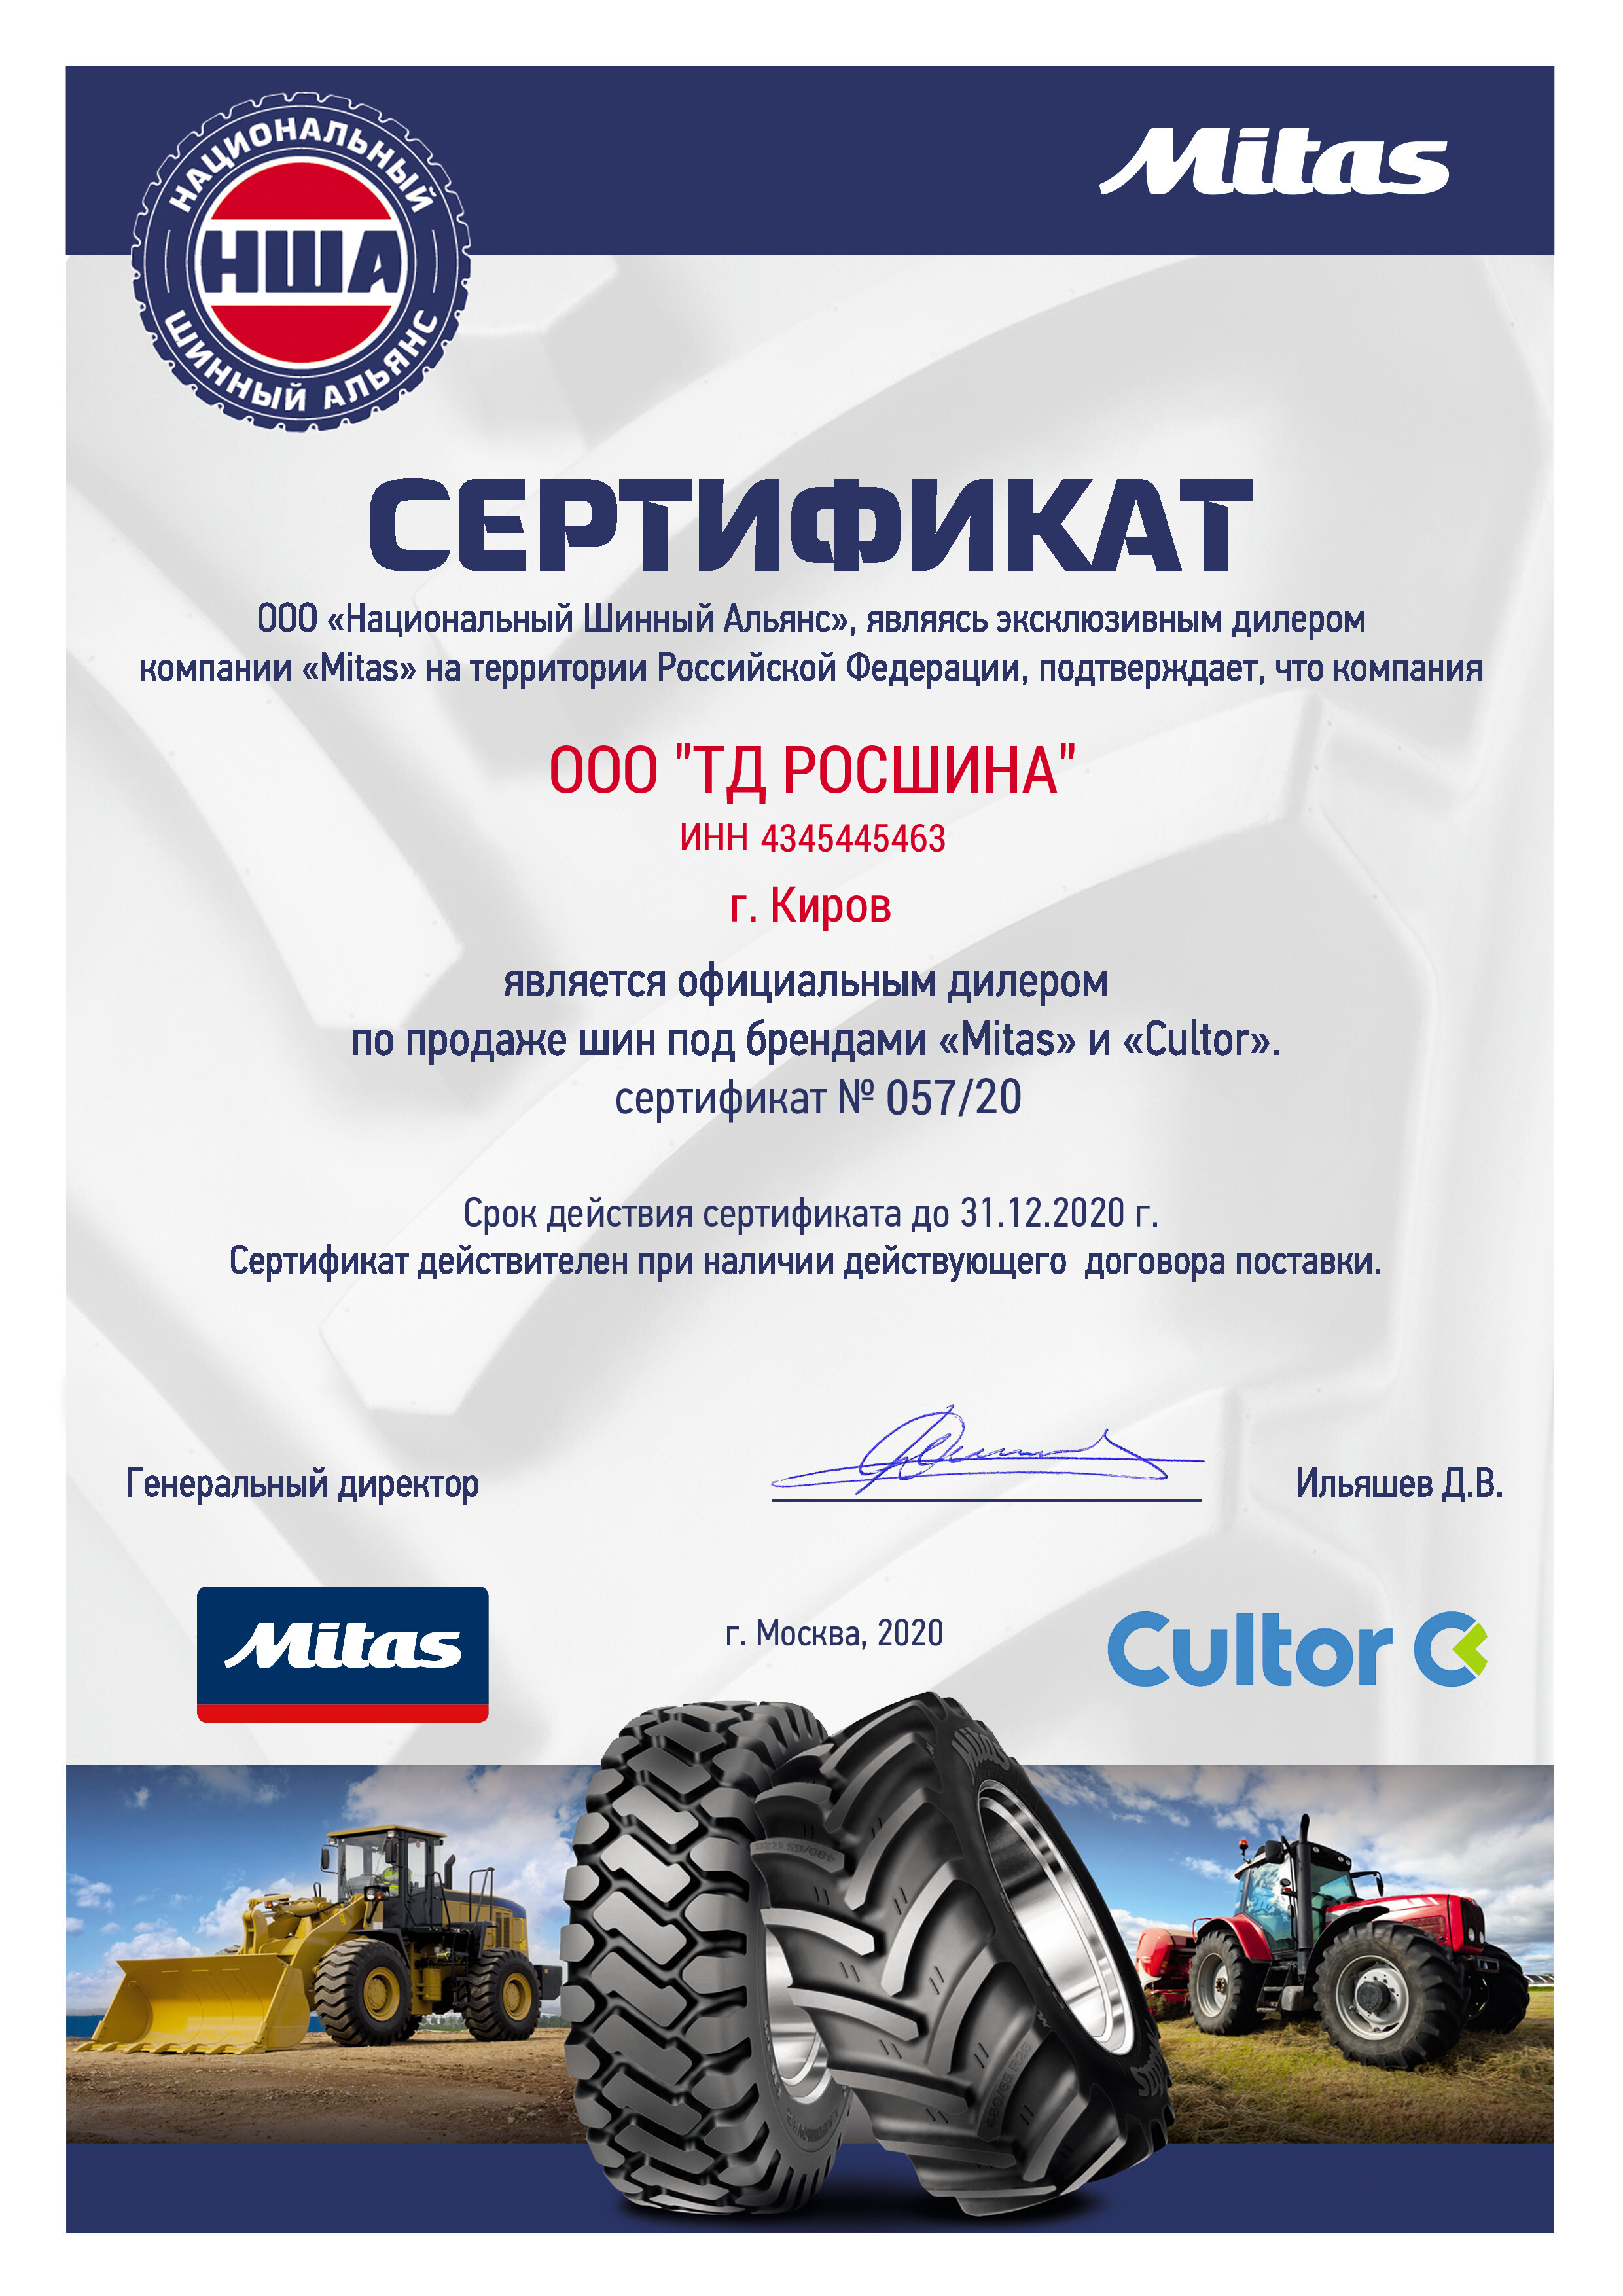 Сертификат Mitas и Cultor